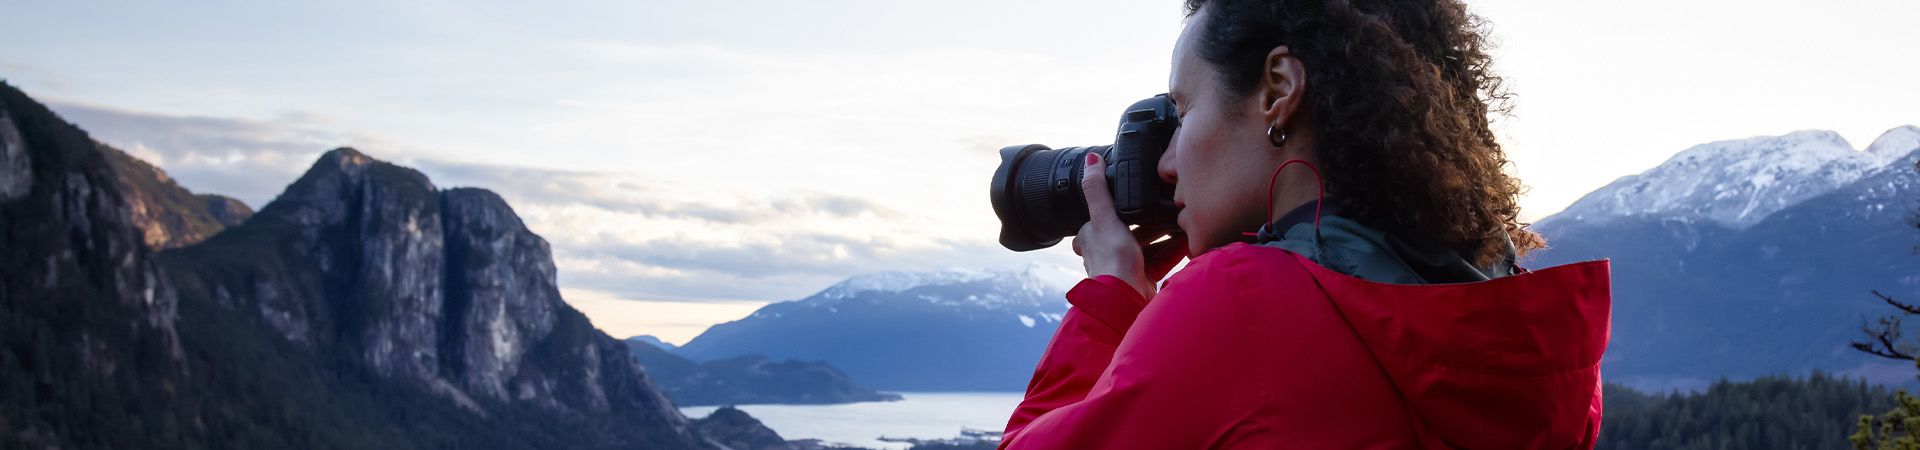 Landschapsfotografie - vrouw fotografeert een berglandschap.